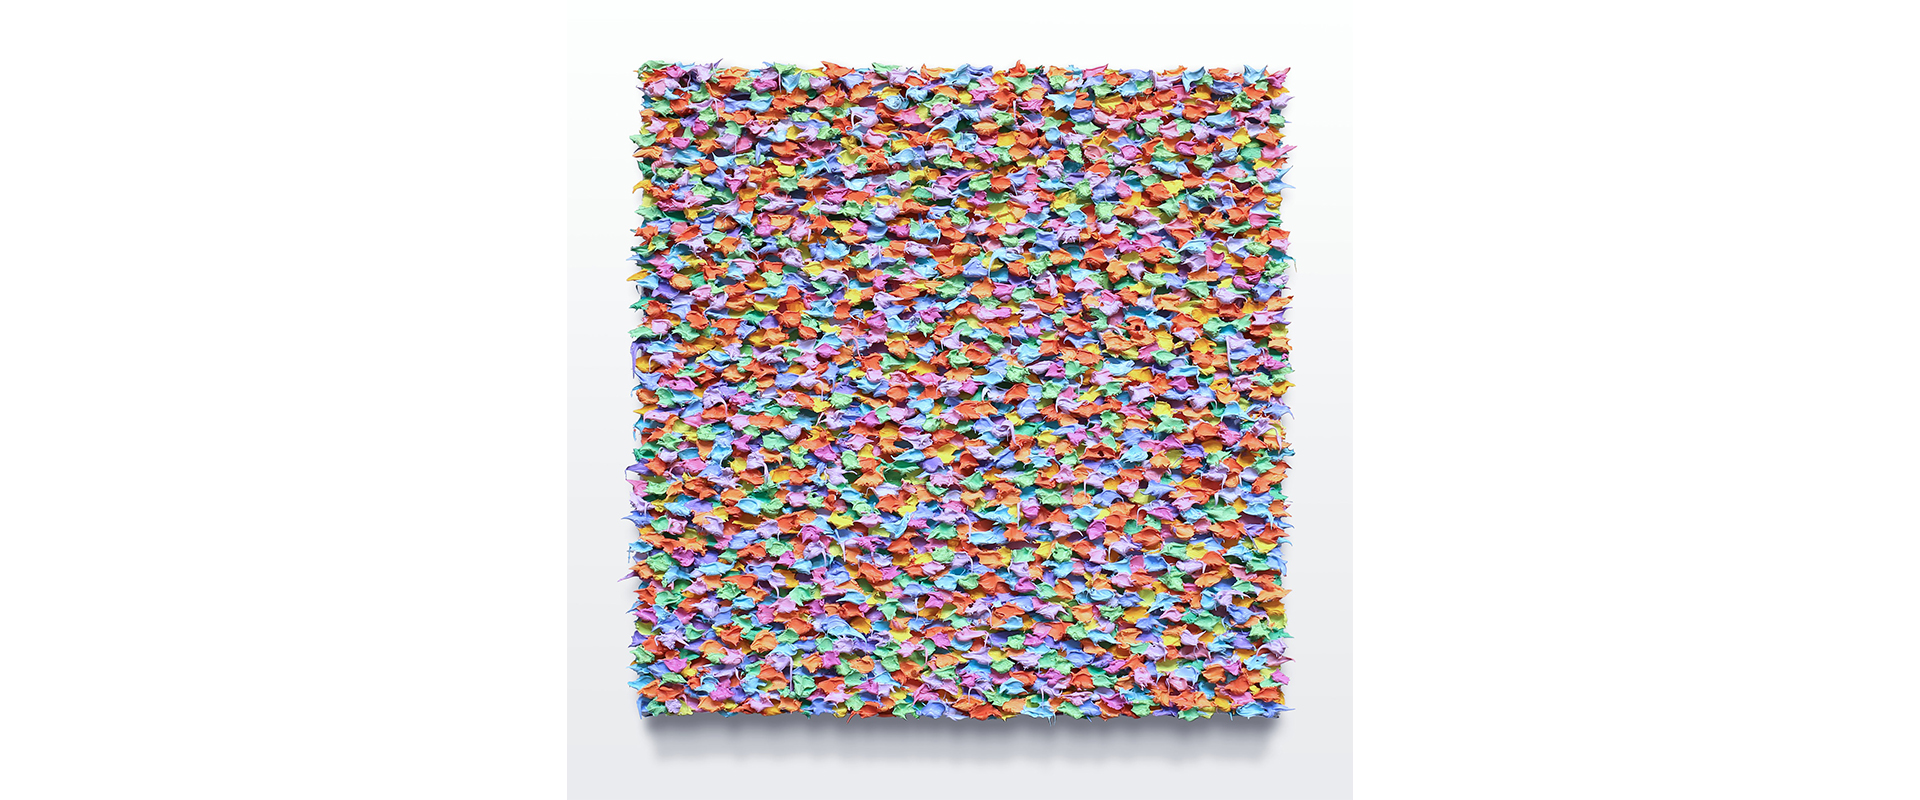 Robert Sagerman, “2,403” - 2021, Öl auf Leinwand, 30,5 x 30,5 cm